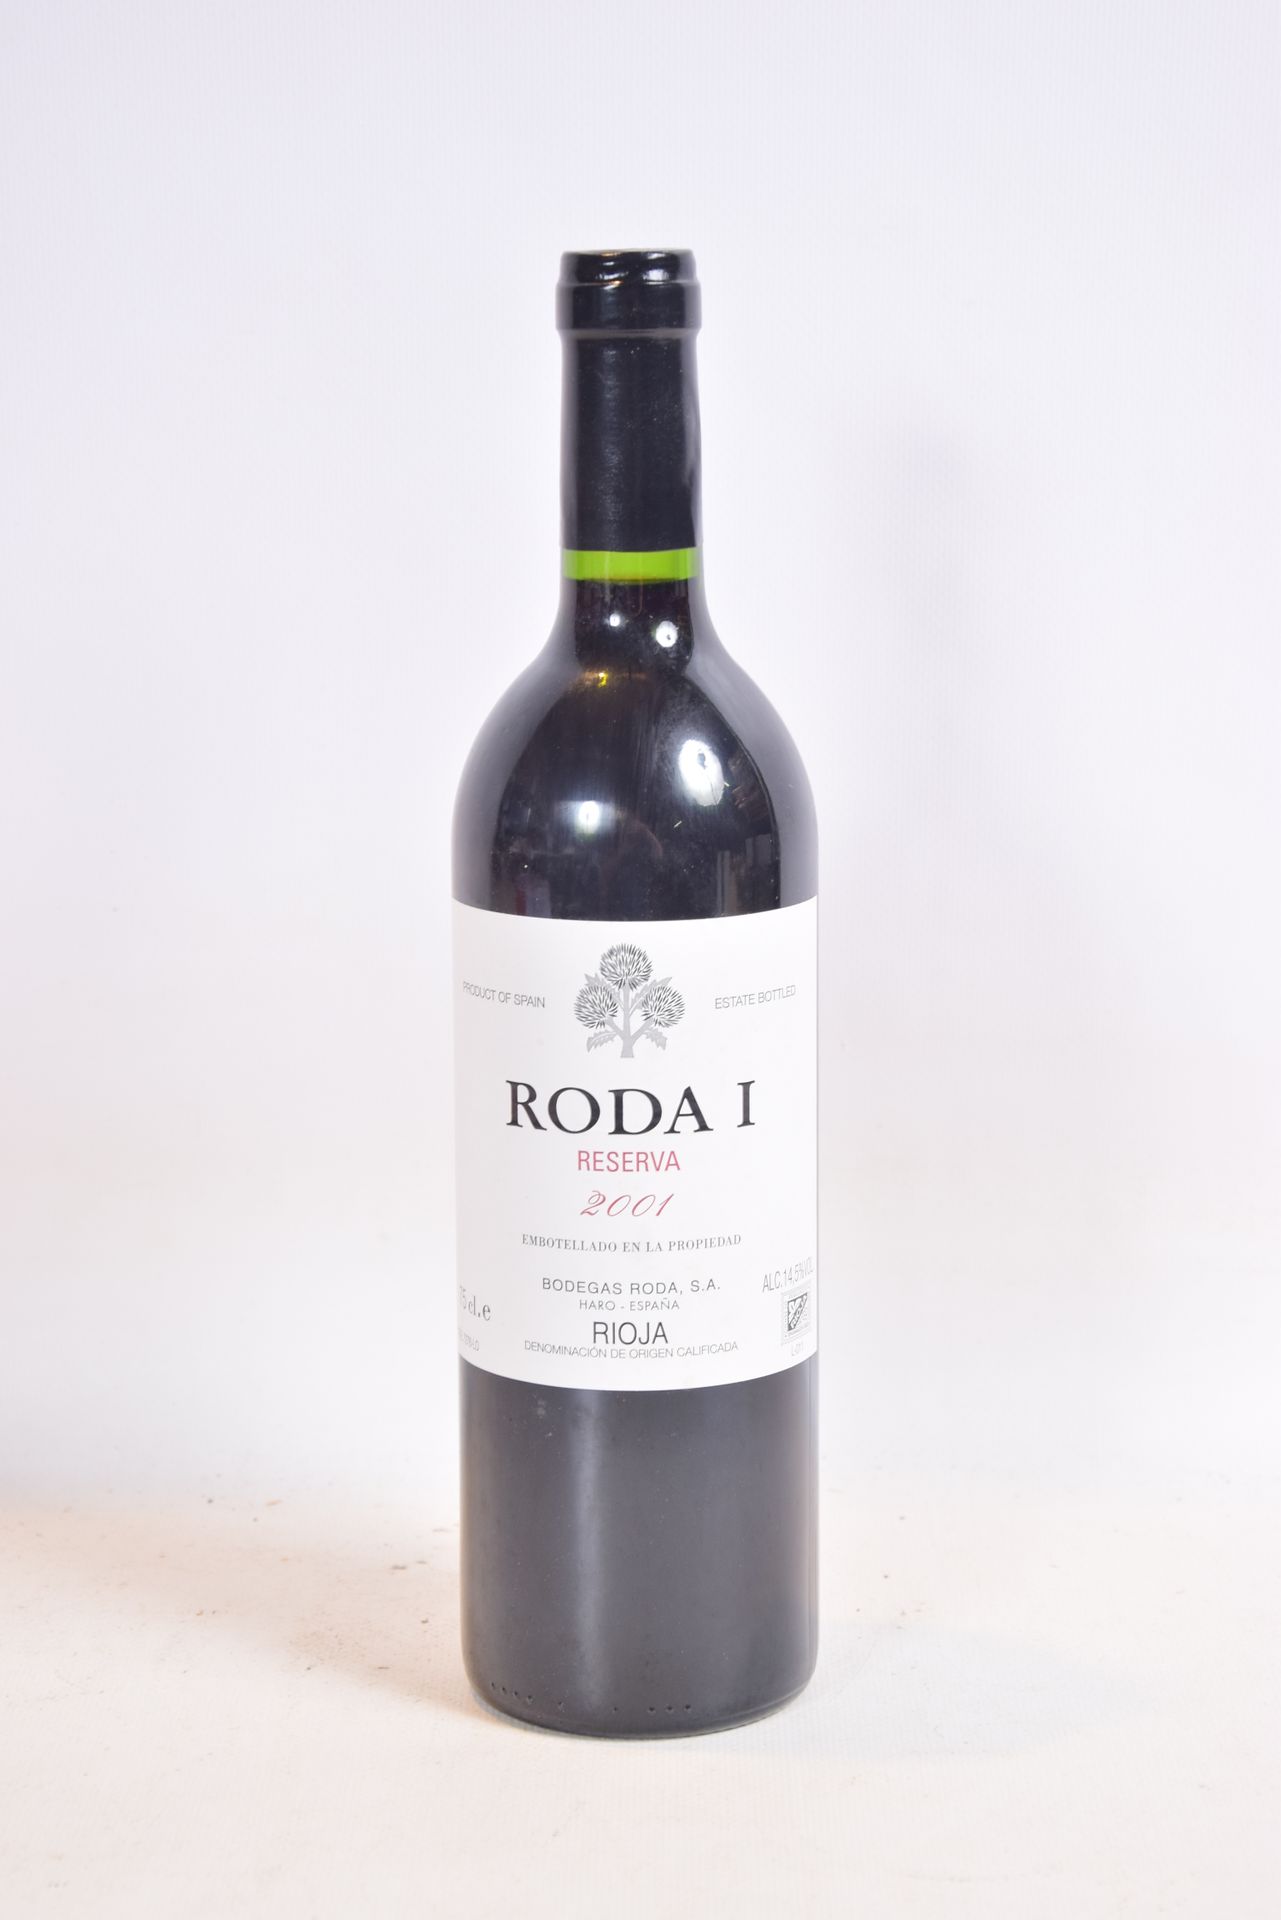 Null 1 Blle Rioja RODA 1 Reserva mise Bodegas Roda (Spagna) 2001

	Presentazione&hellip;